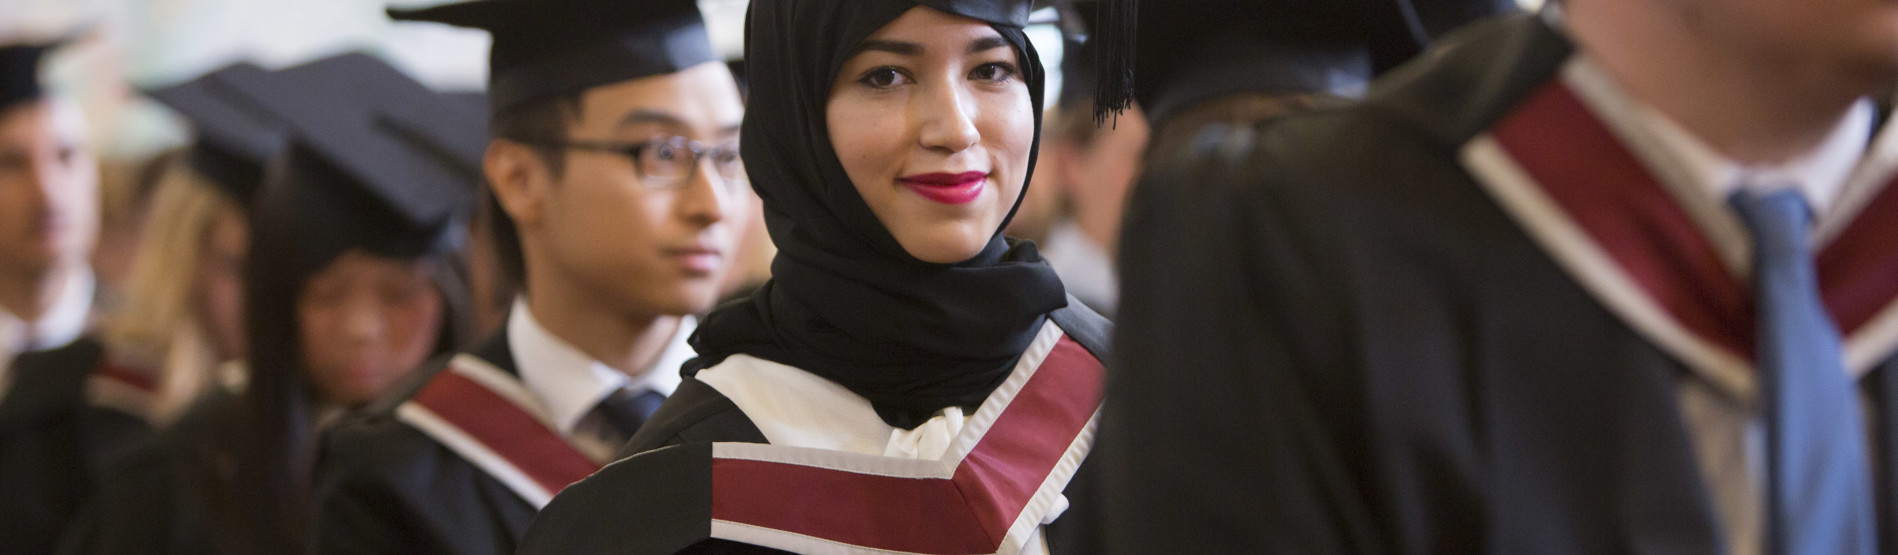 girl smiling at graduation